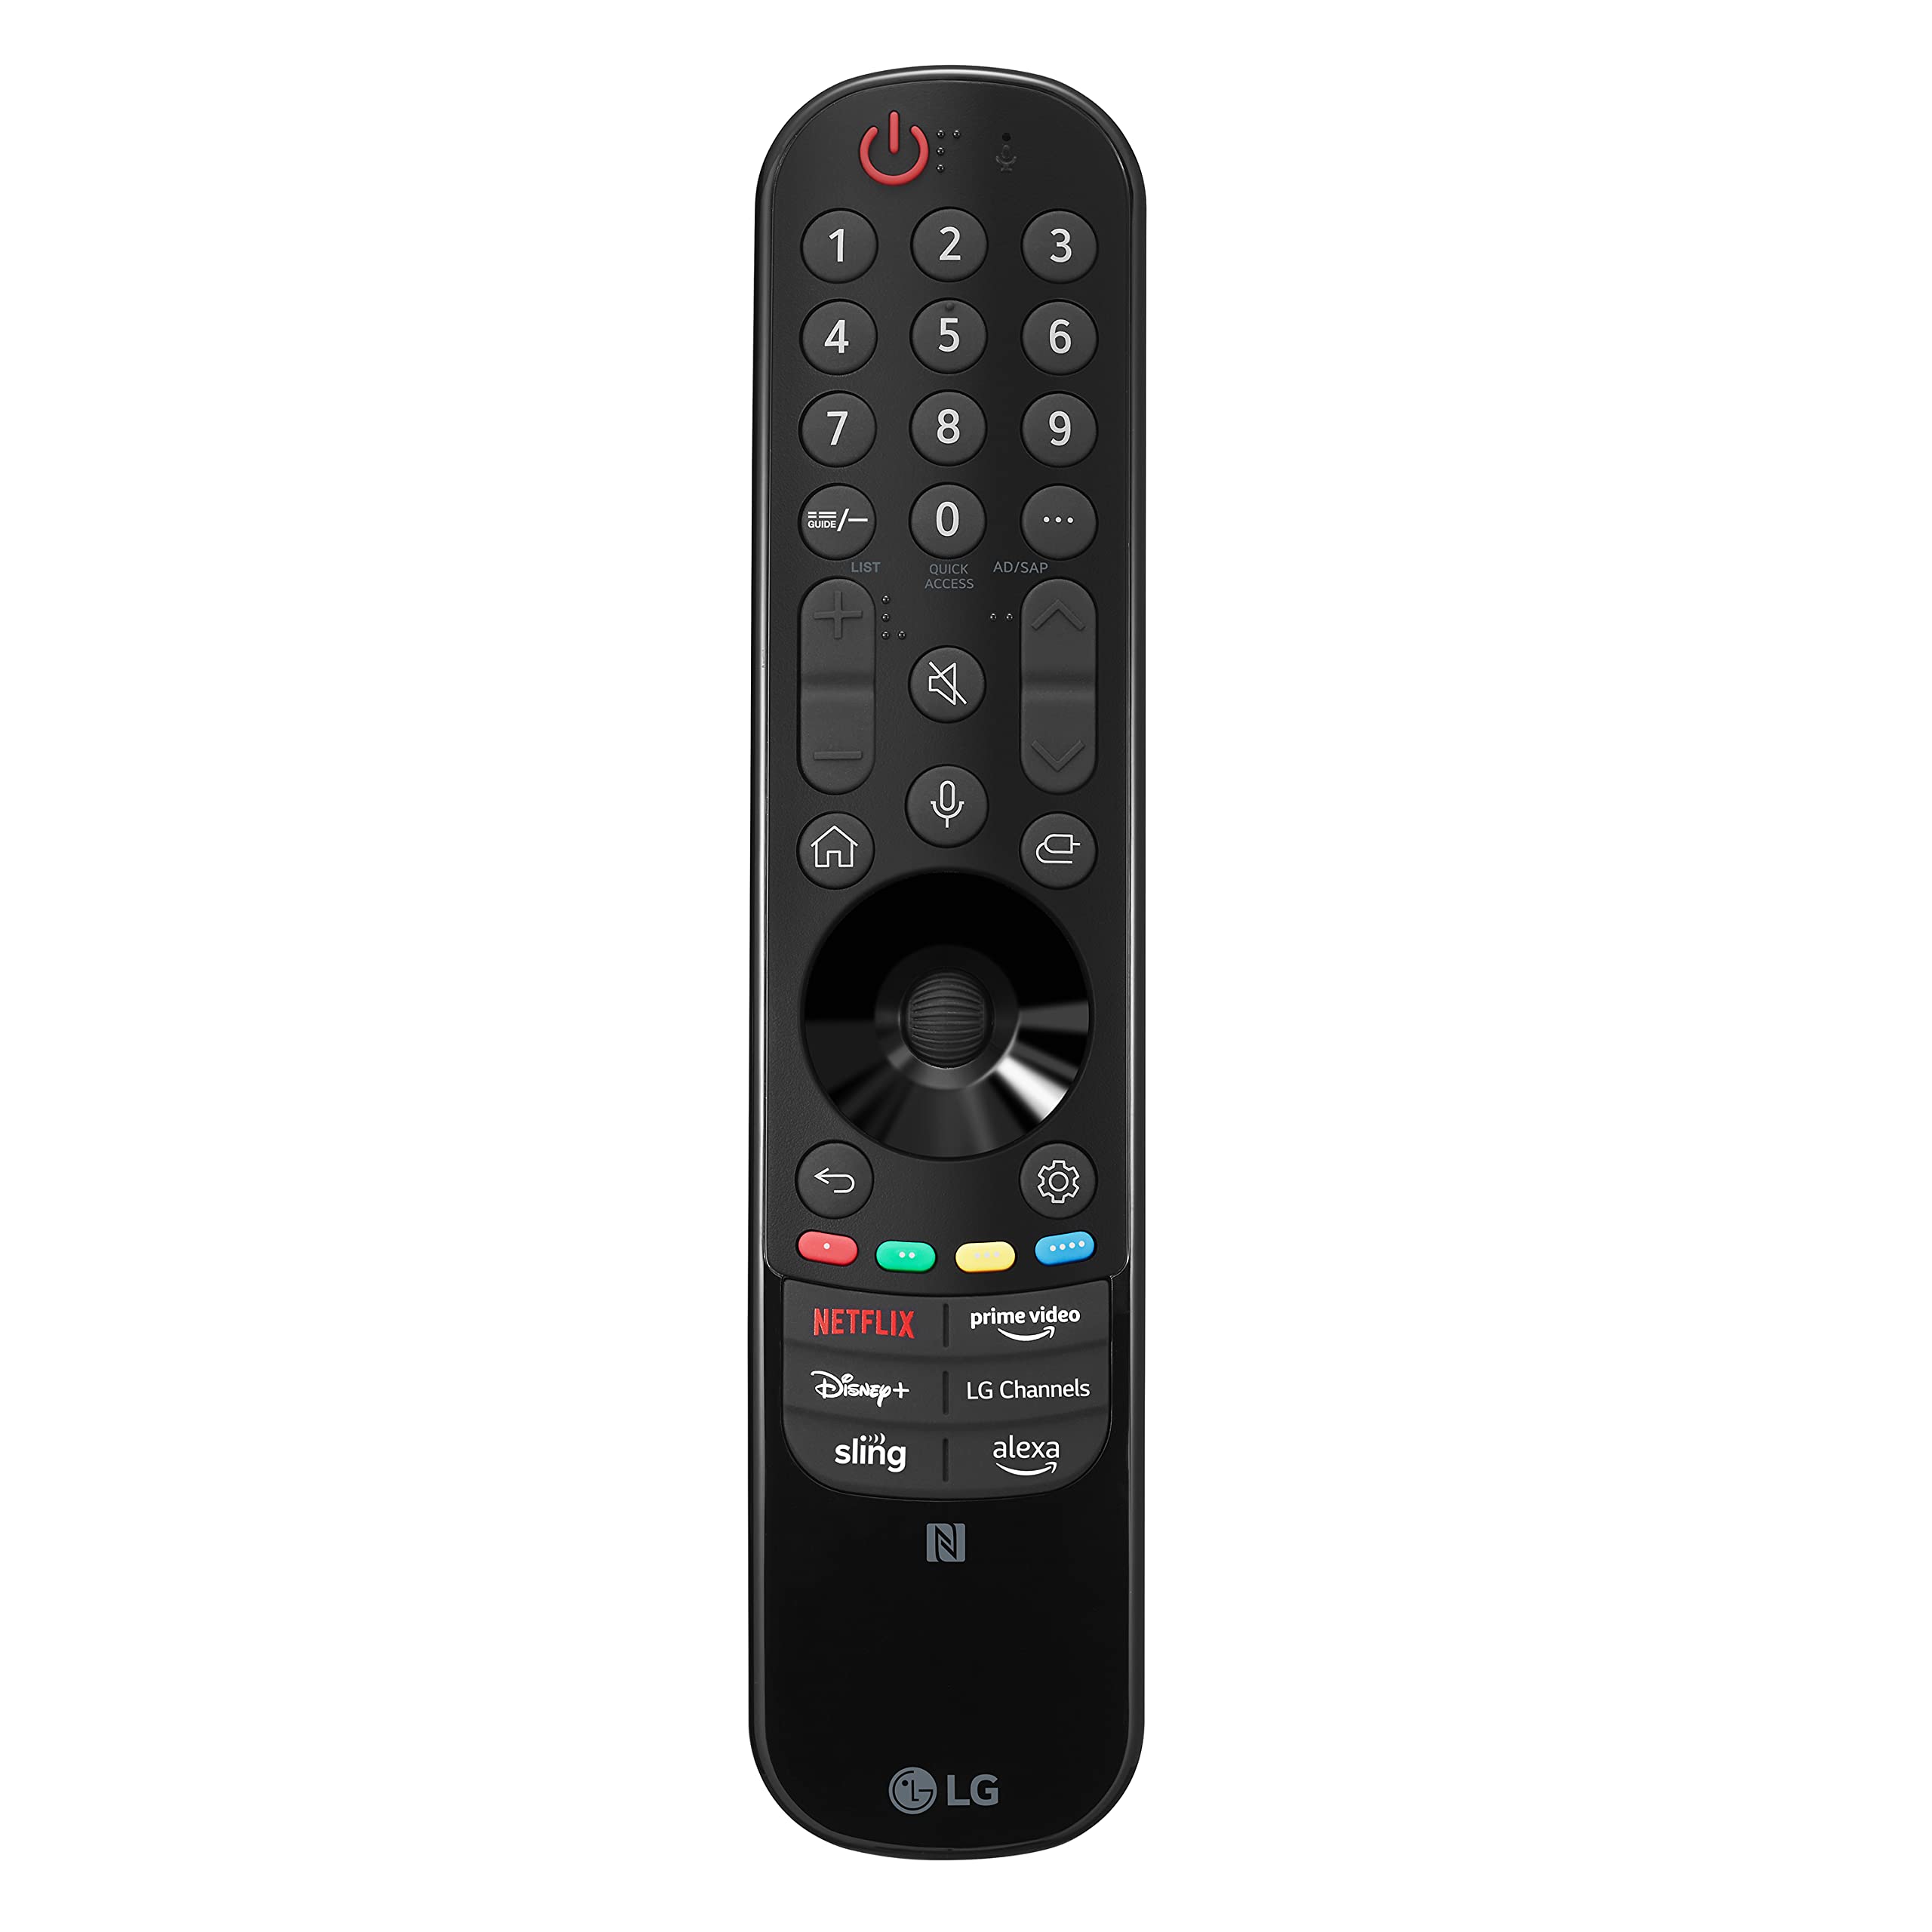 LG Magic Remote MR23GN, 2023